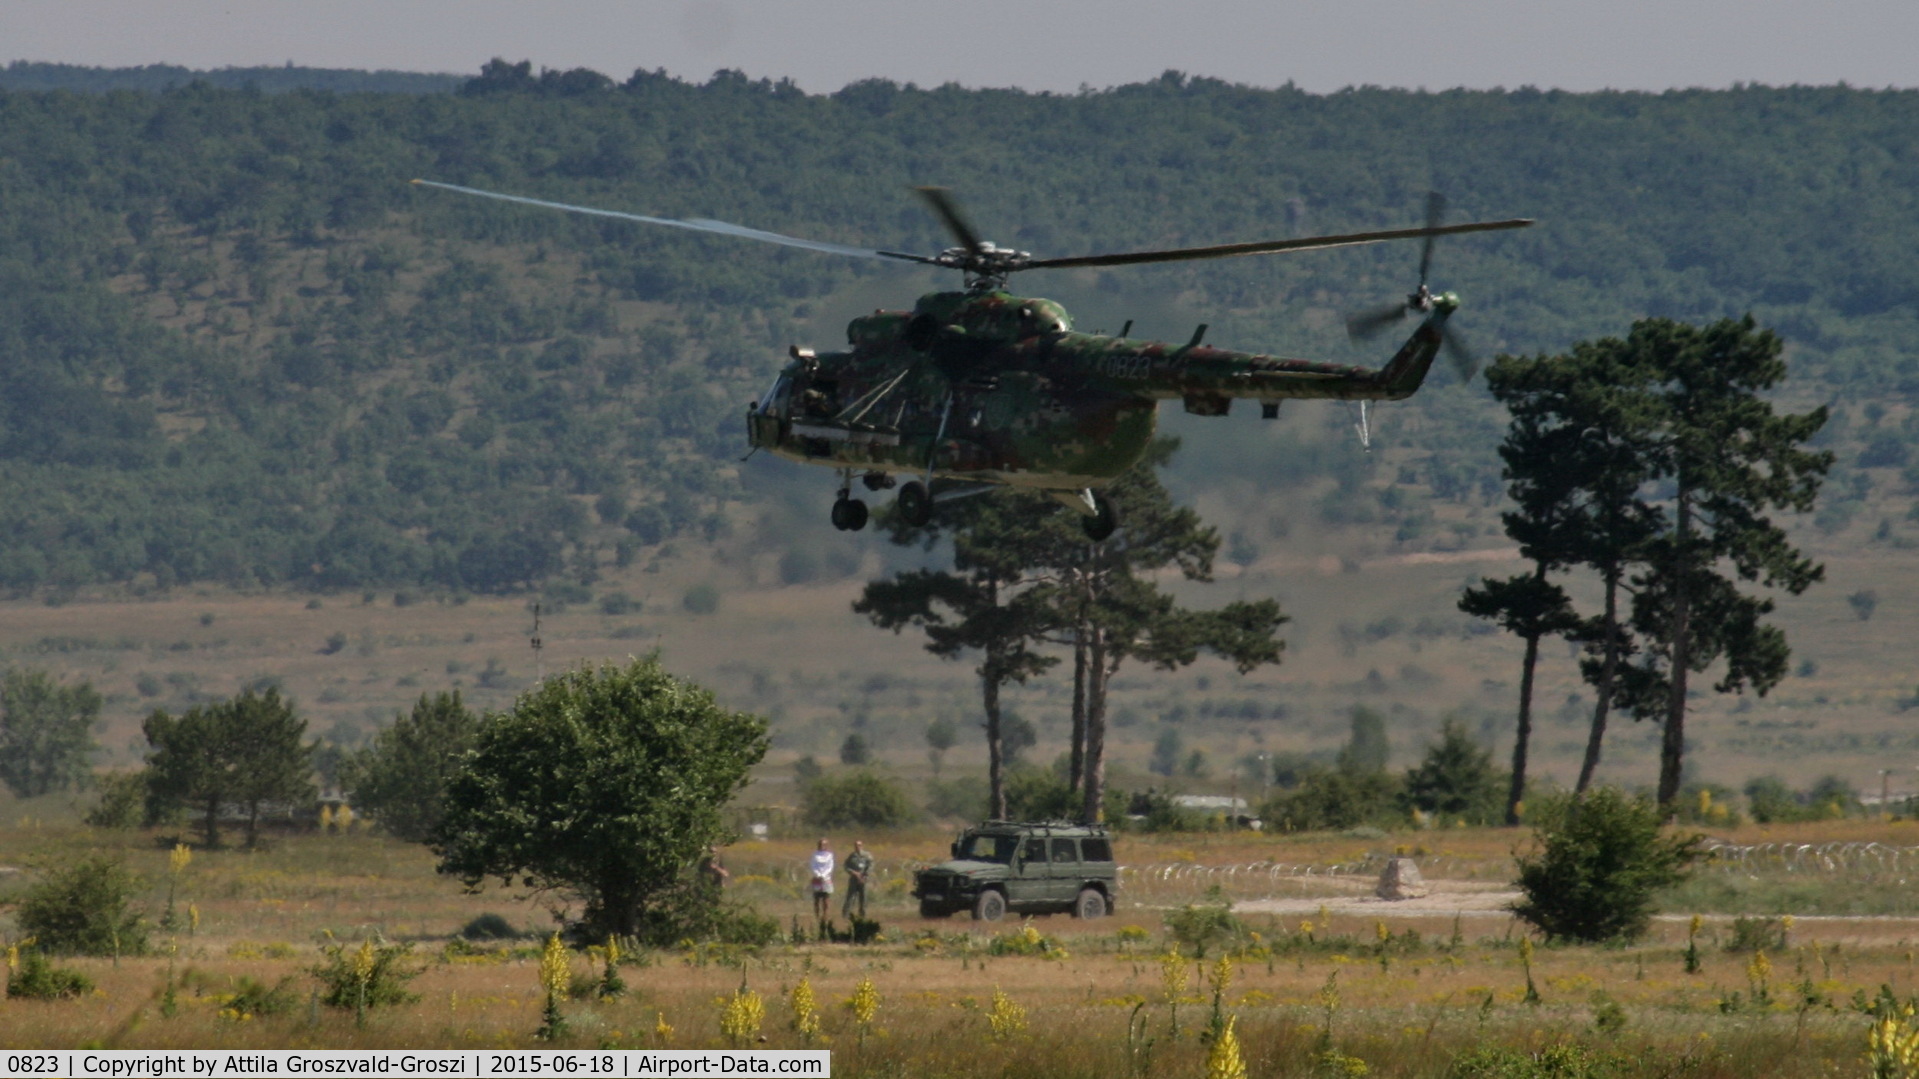 0823, 1987 Mil Mi-17M C/N 108M23, Veszprém, Jutas-újmajor Military training base, Hungary